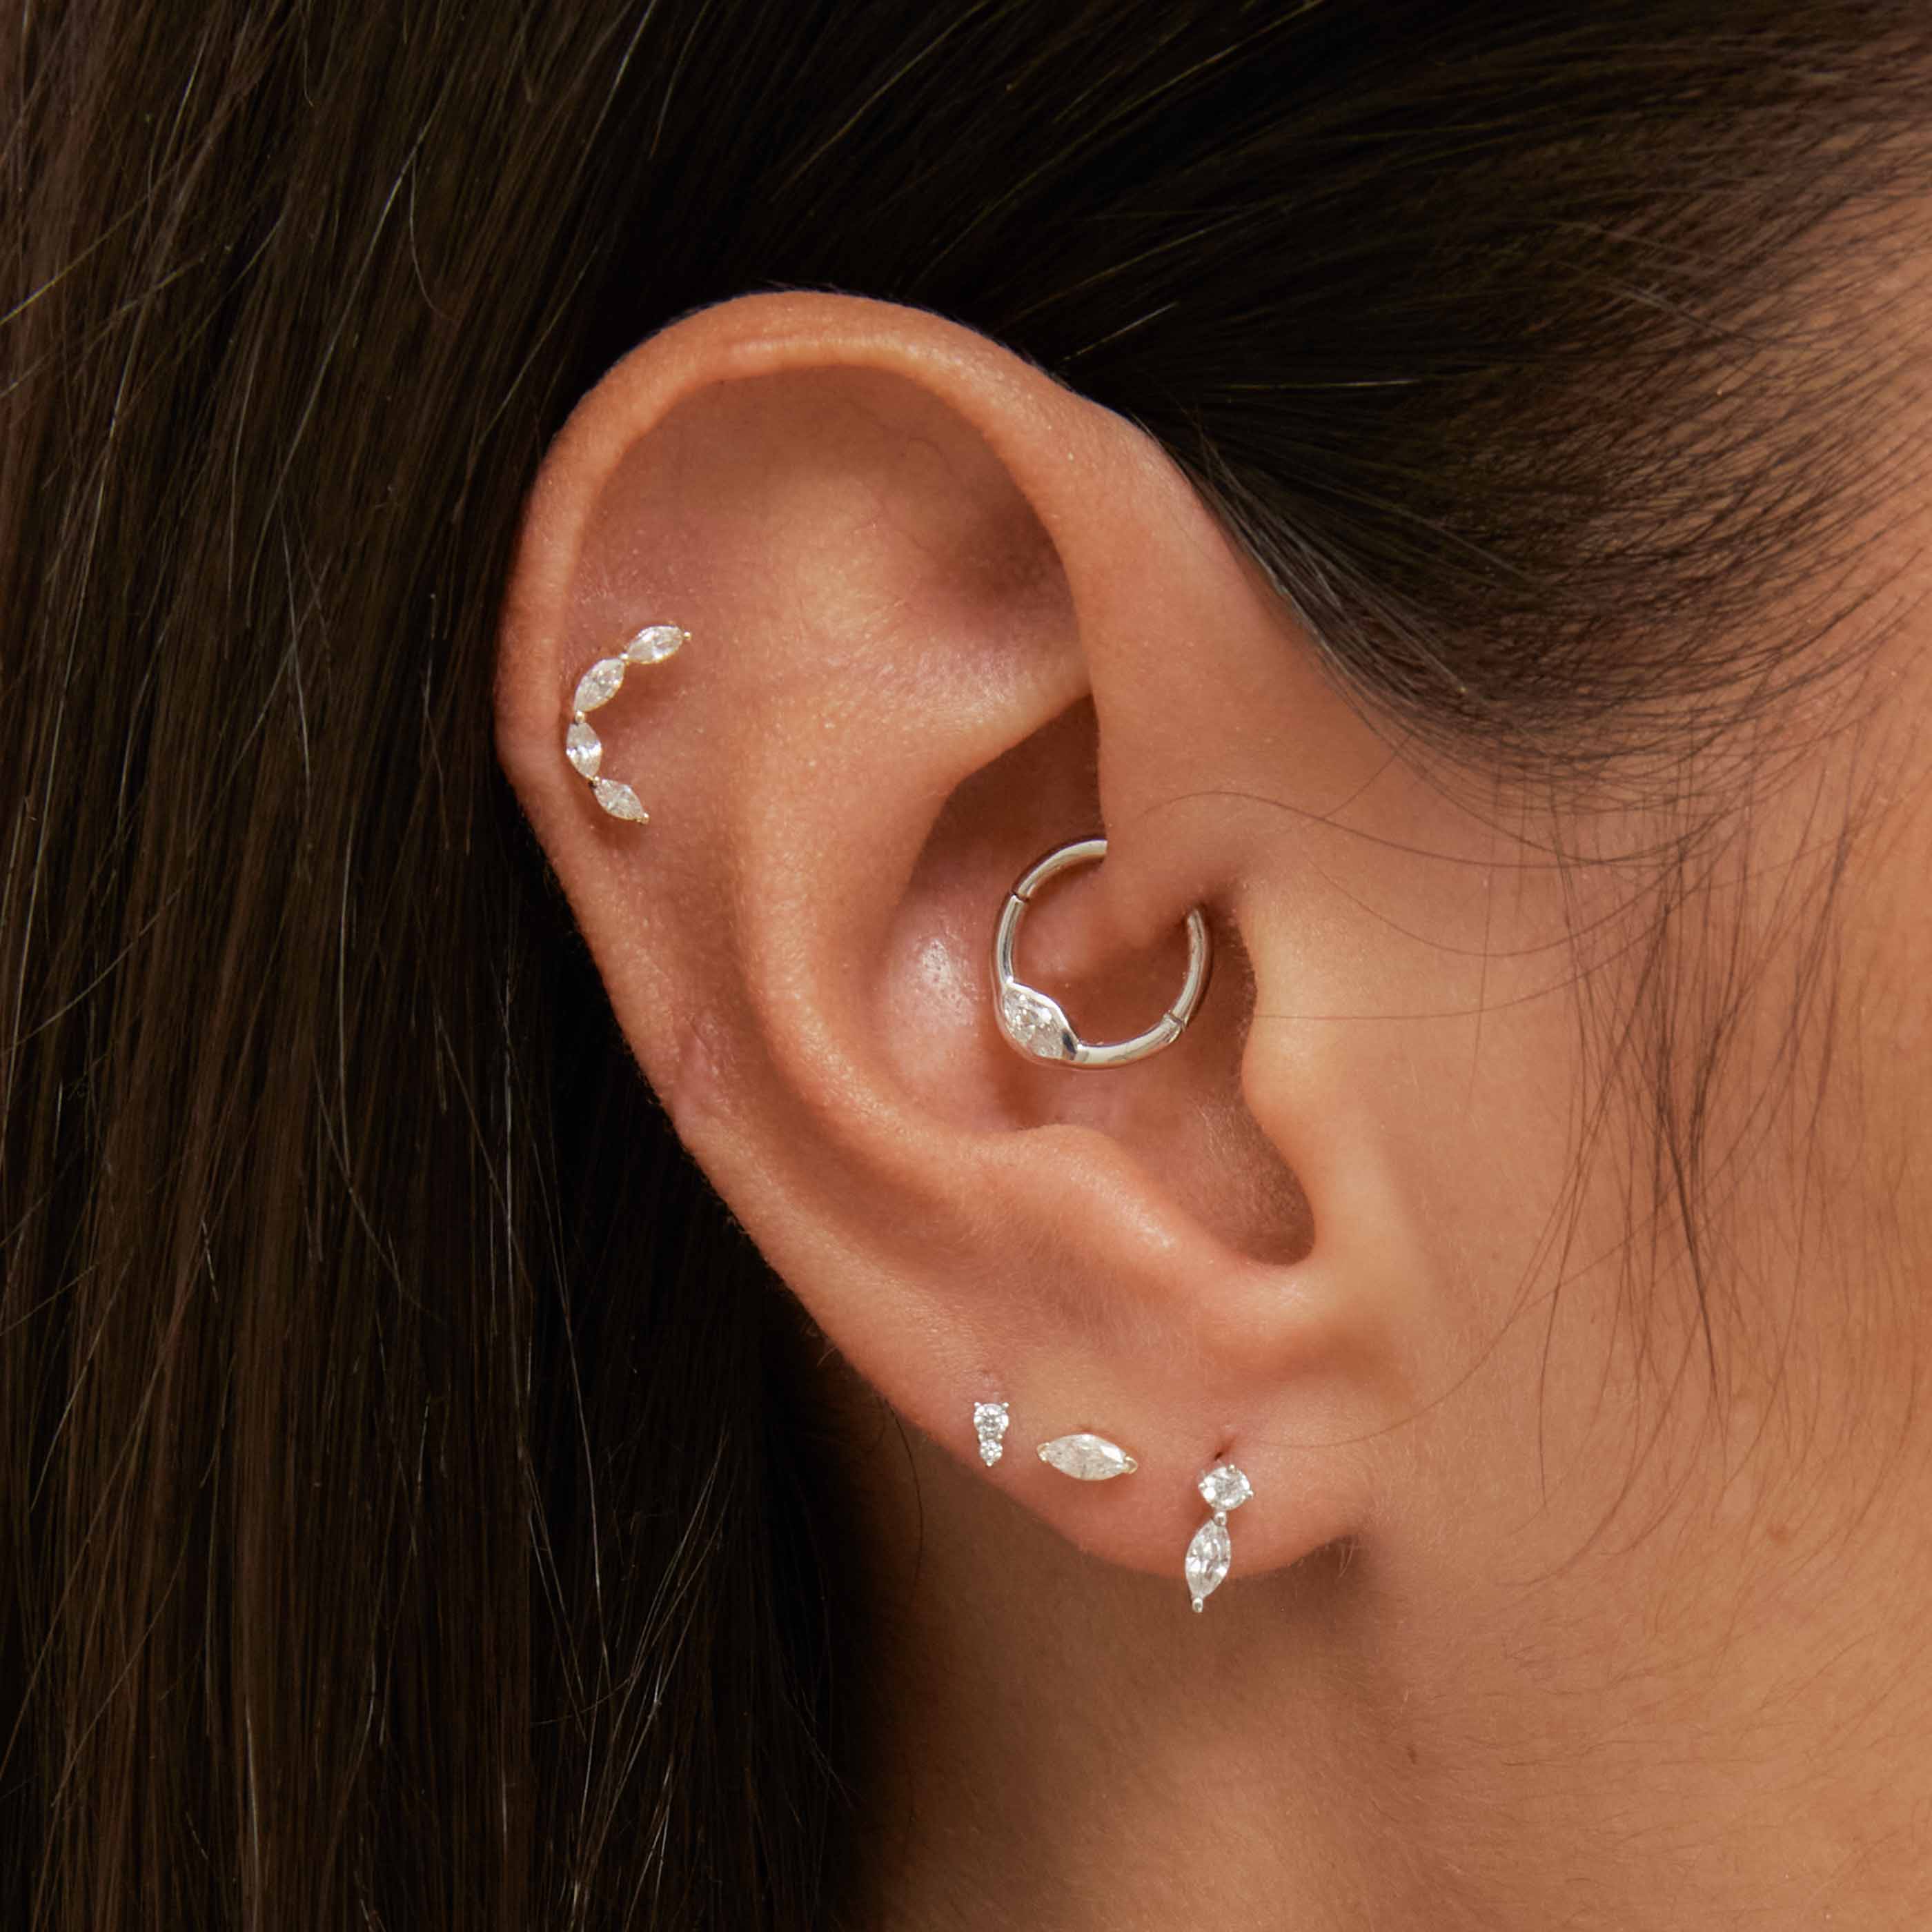 Gold Zirconia Stud Earrings, Tiny Gold Studs, Second Hole Earrings, Silver  Stud Cz Earrings, Tragus Earrings, Cartilage Zirconia Studs - Etsy | Stud  earrings, Earrings, Tiny gold studs